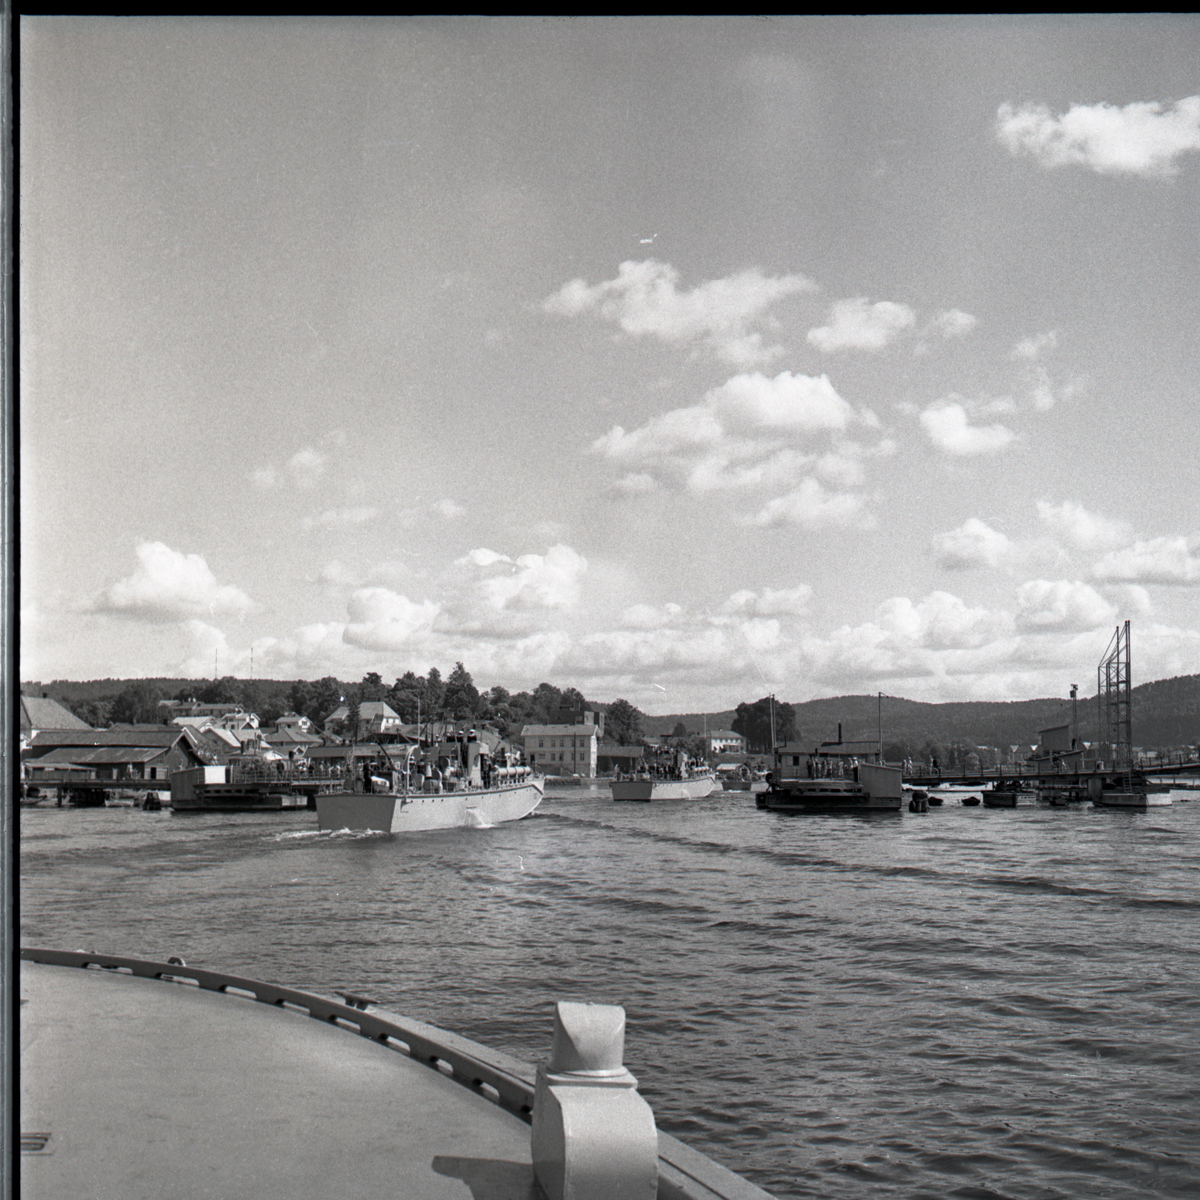 Samlefoto: Elco-klasse MTB-er gjennom Bandak-kanalen i juli 1953.
Havneområde.